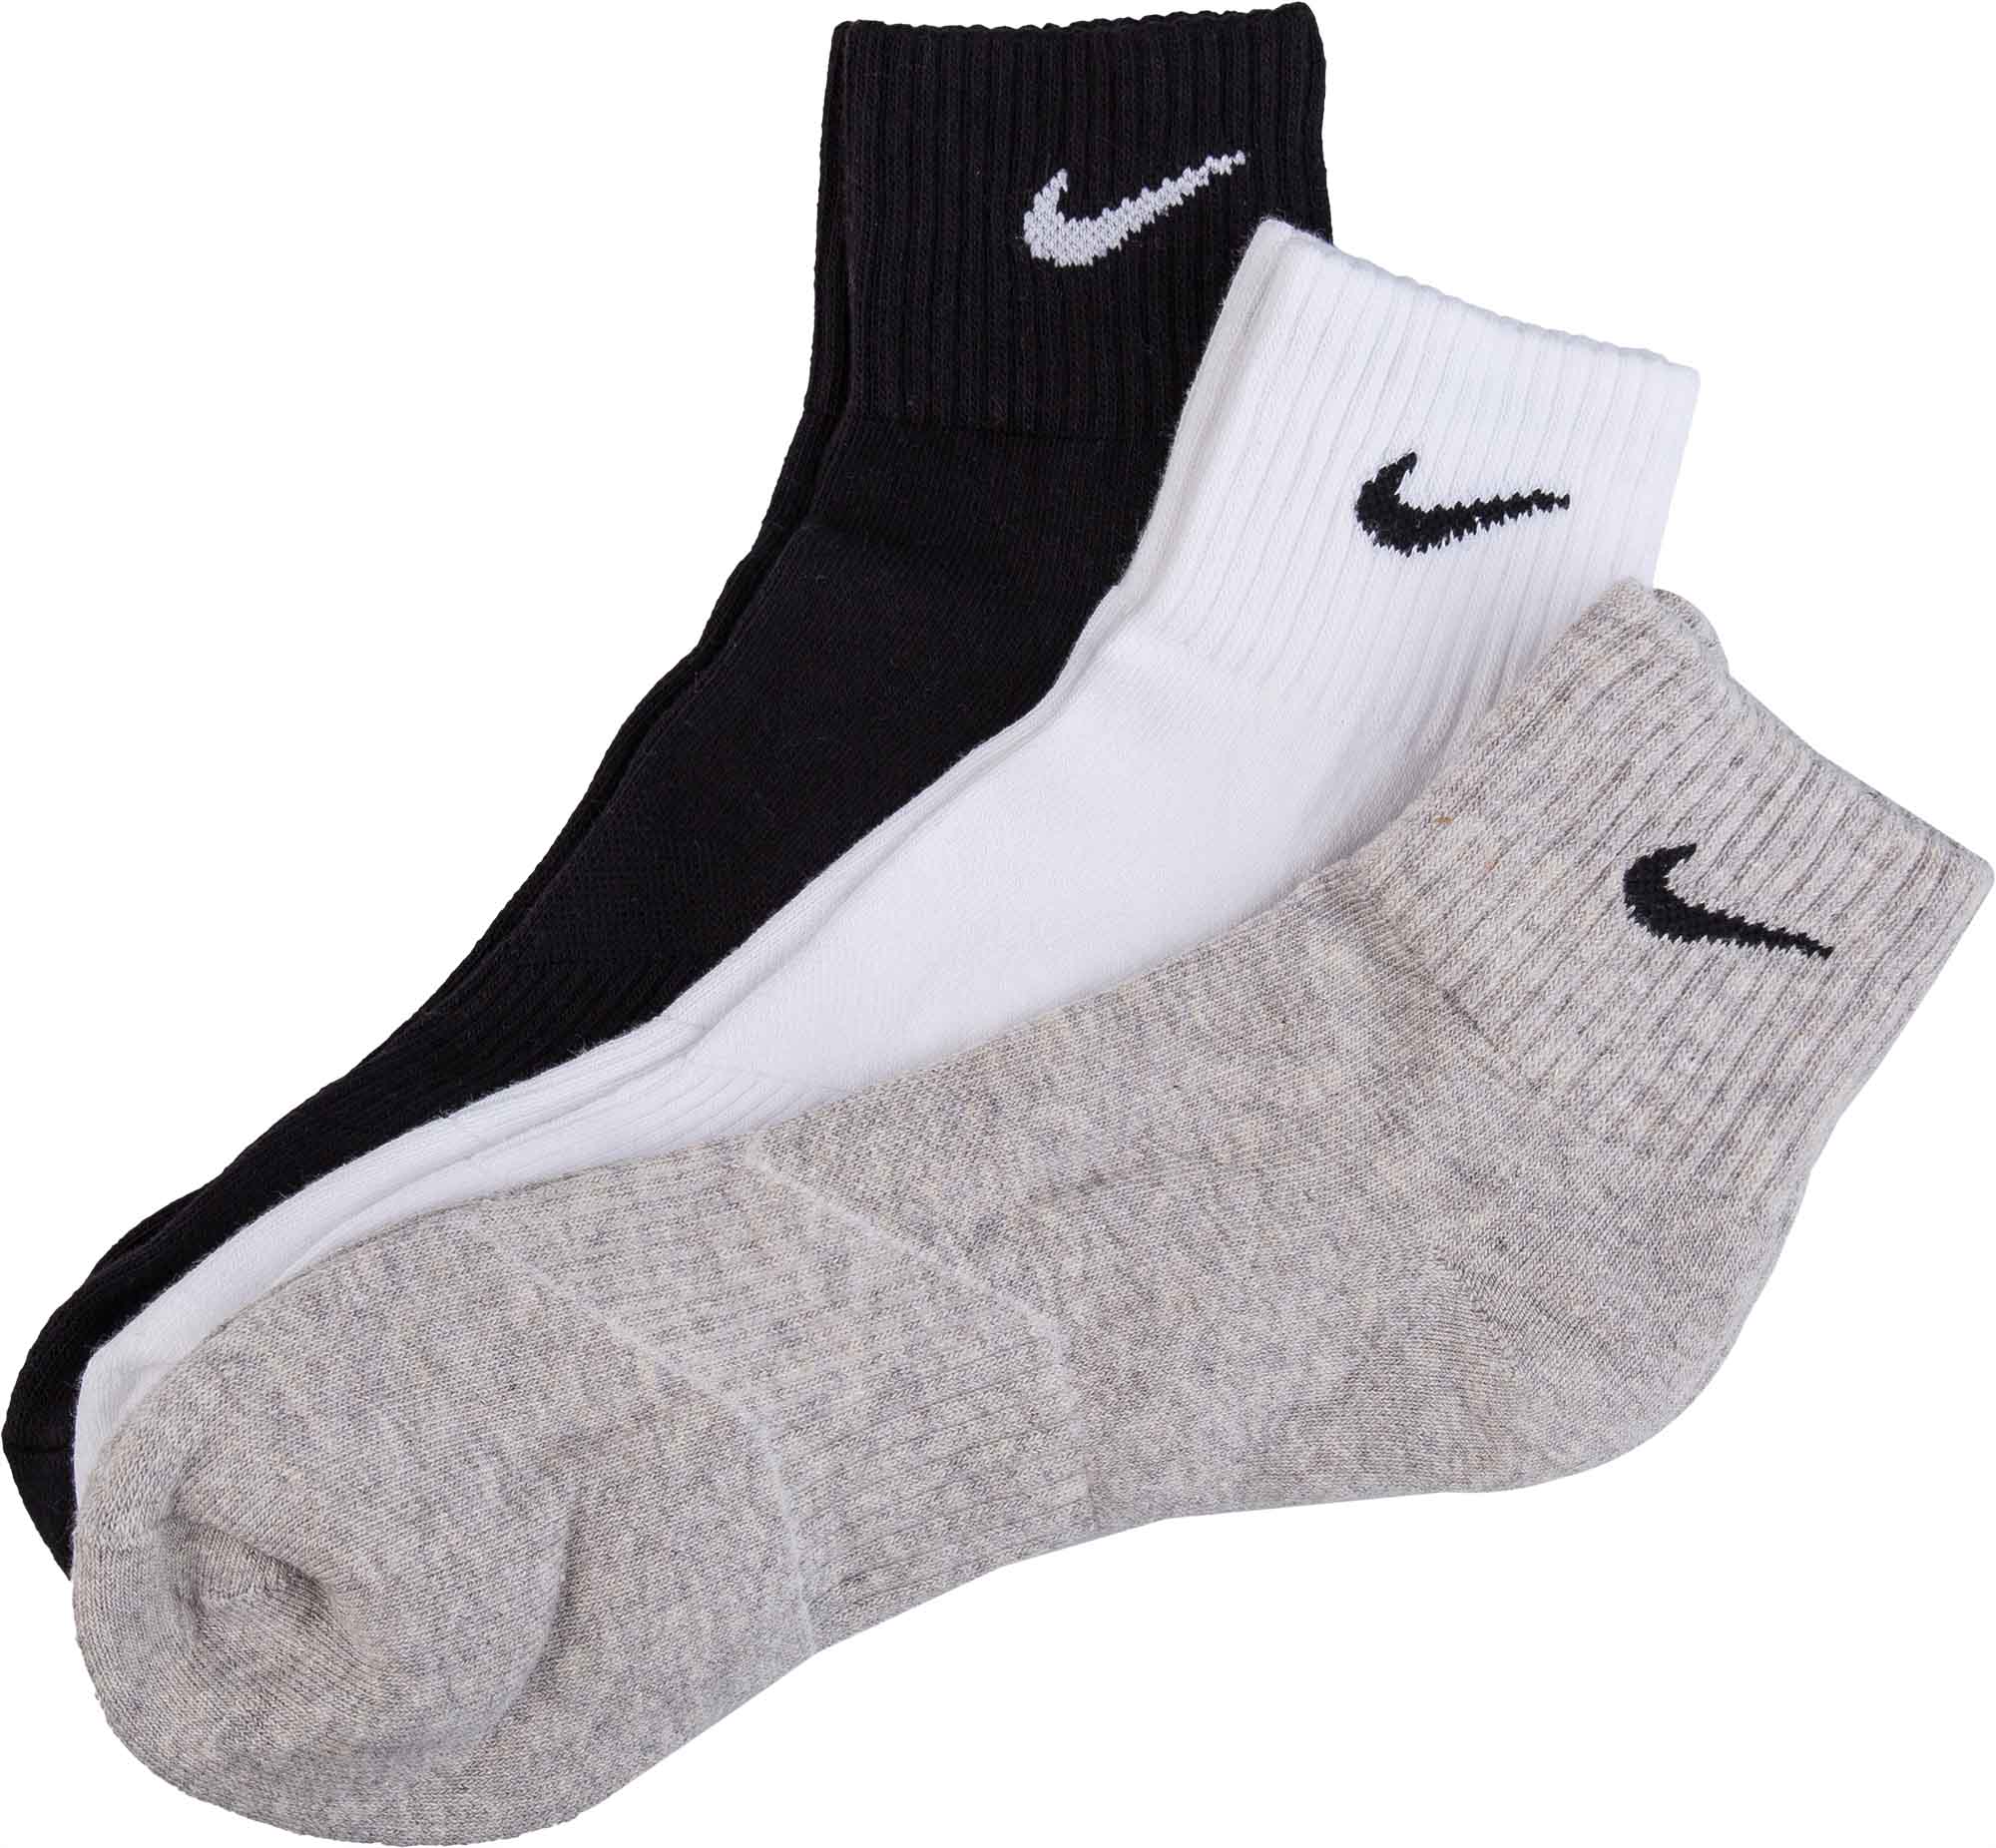 Unisex ponožky